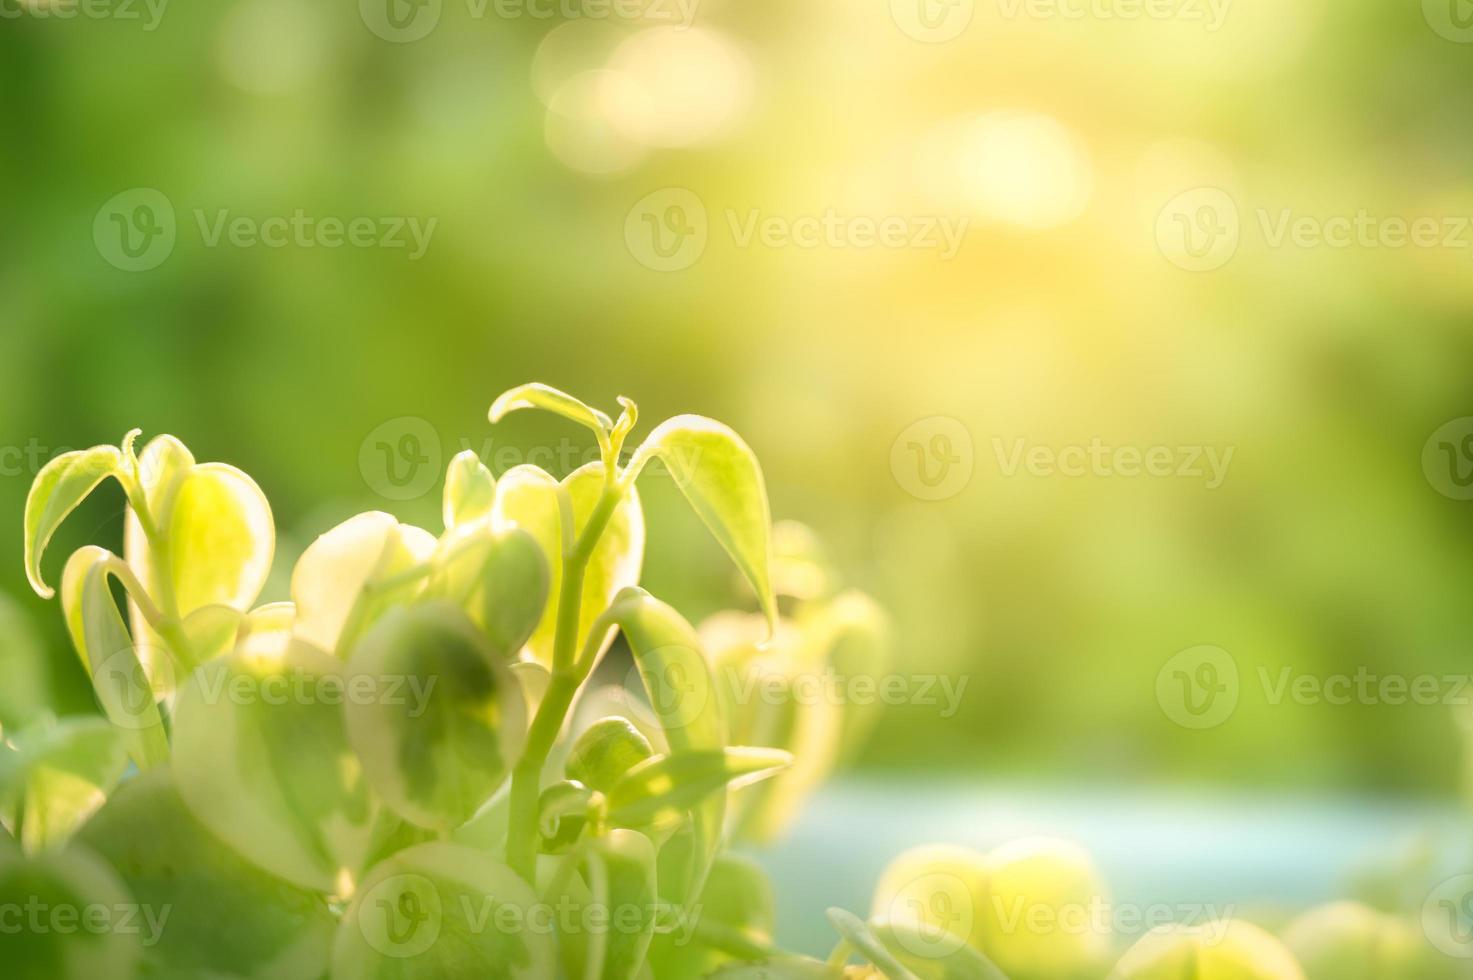 peperomia gröna blad i trädgården på naturlig bakgrund foto